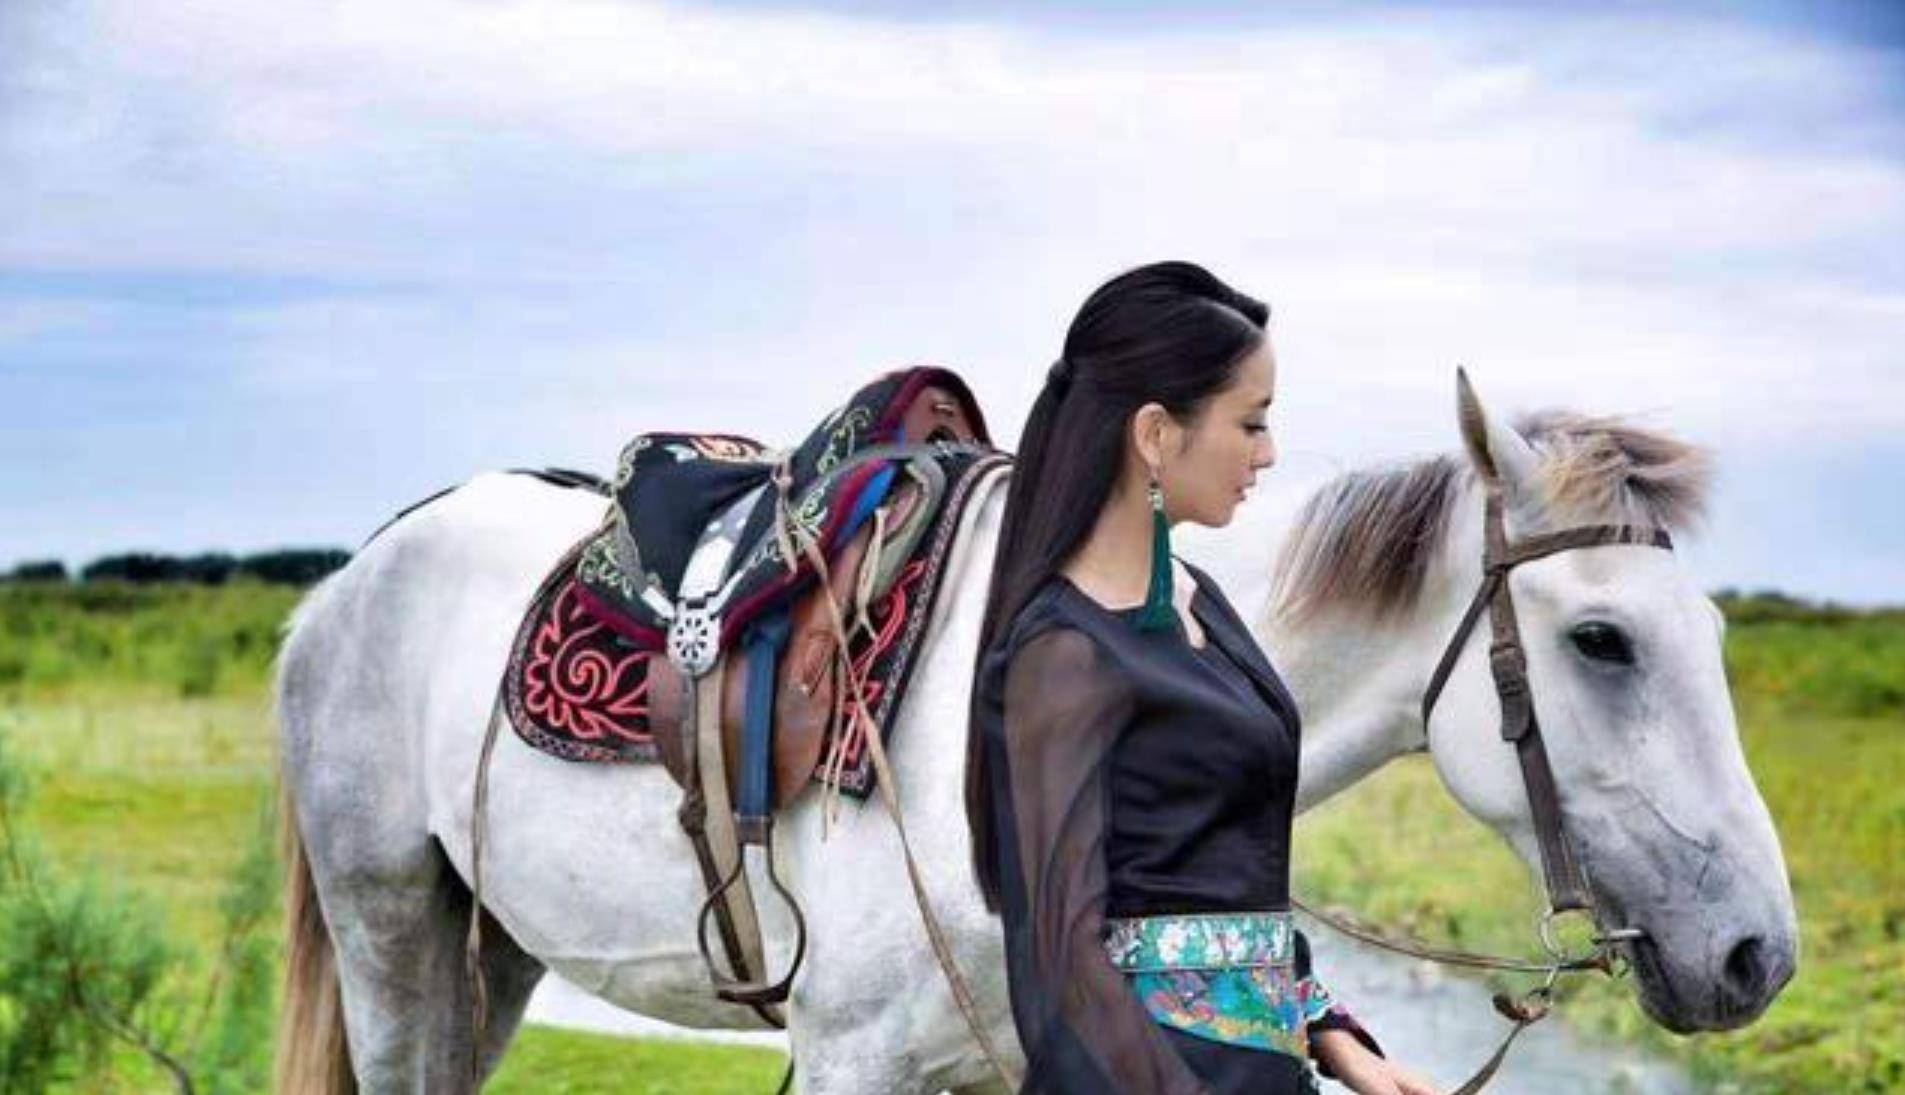 原创佟丽娅穿民族服草原骑马,拉弓射箭颇有古代女将军风范,英姿飒爽